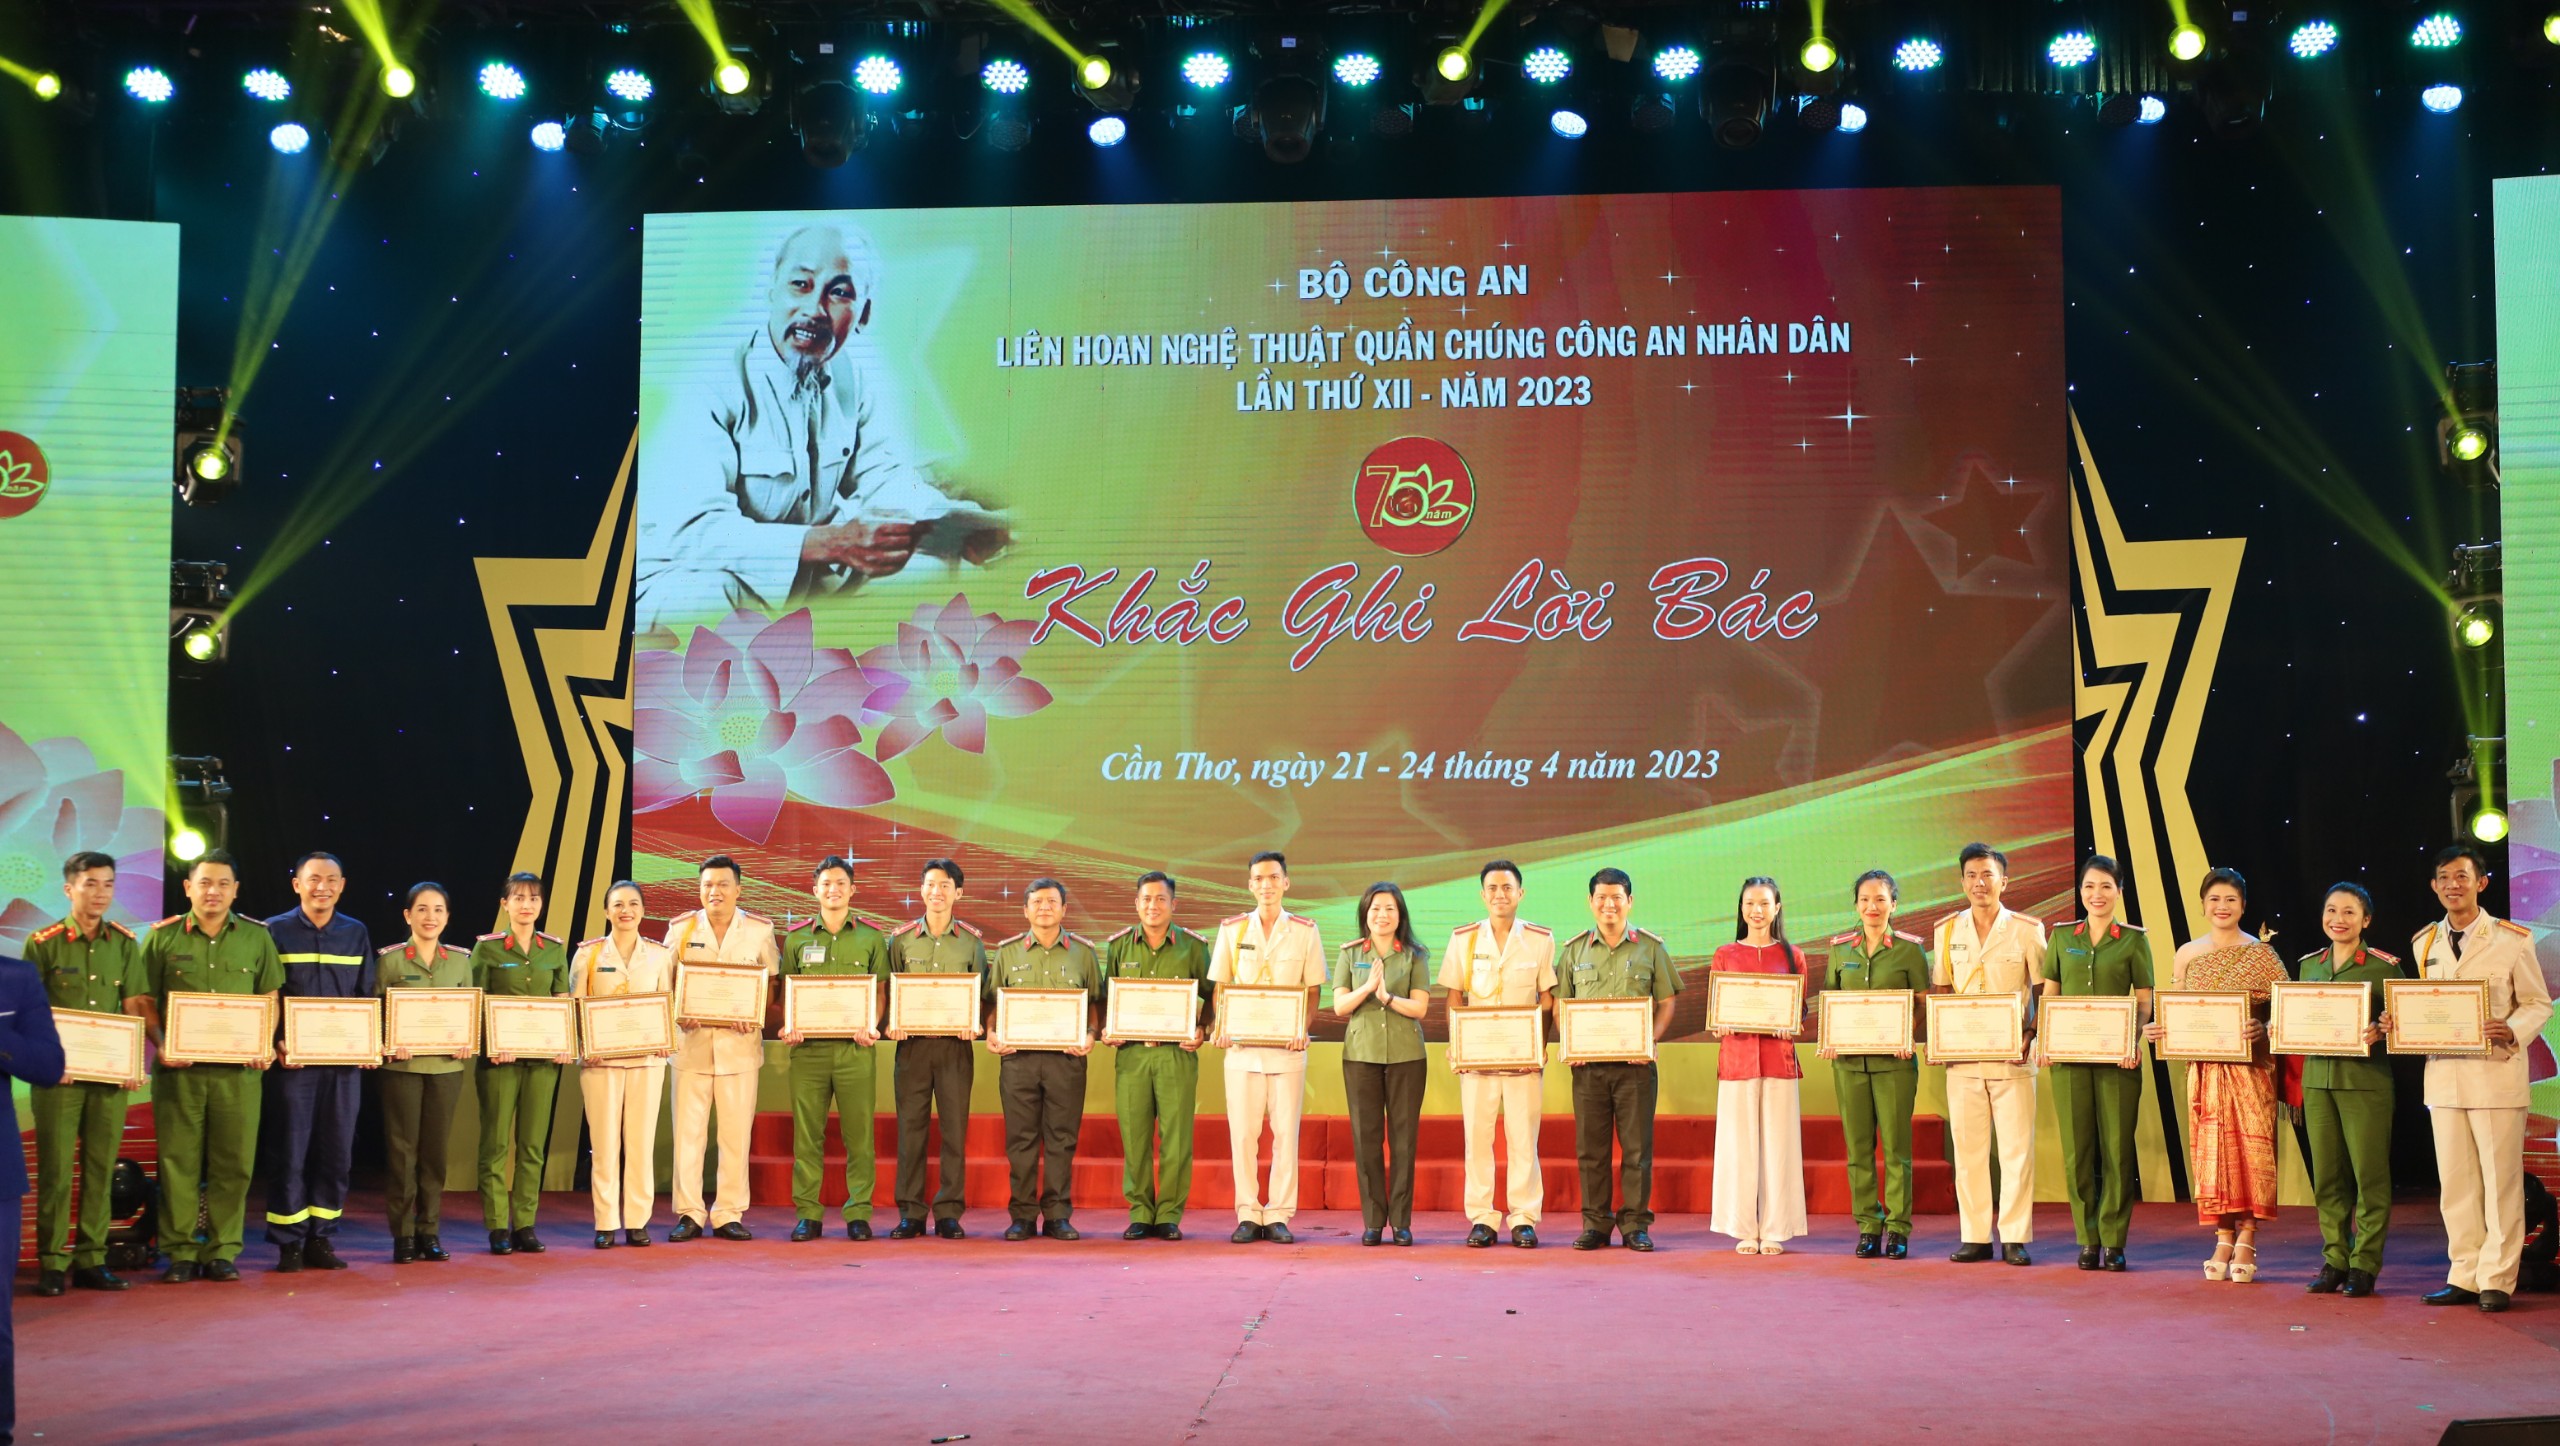 Thượng tá NSND Nguyễn Thị Thúy Hiền - Trưởng phòng 4, Cục X03, Bộ Công an tặng Bằng khen của Bộ Công an cho các tiết mục đạt giải A.